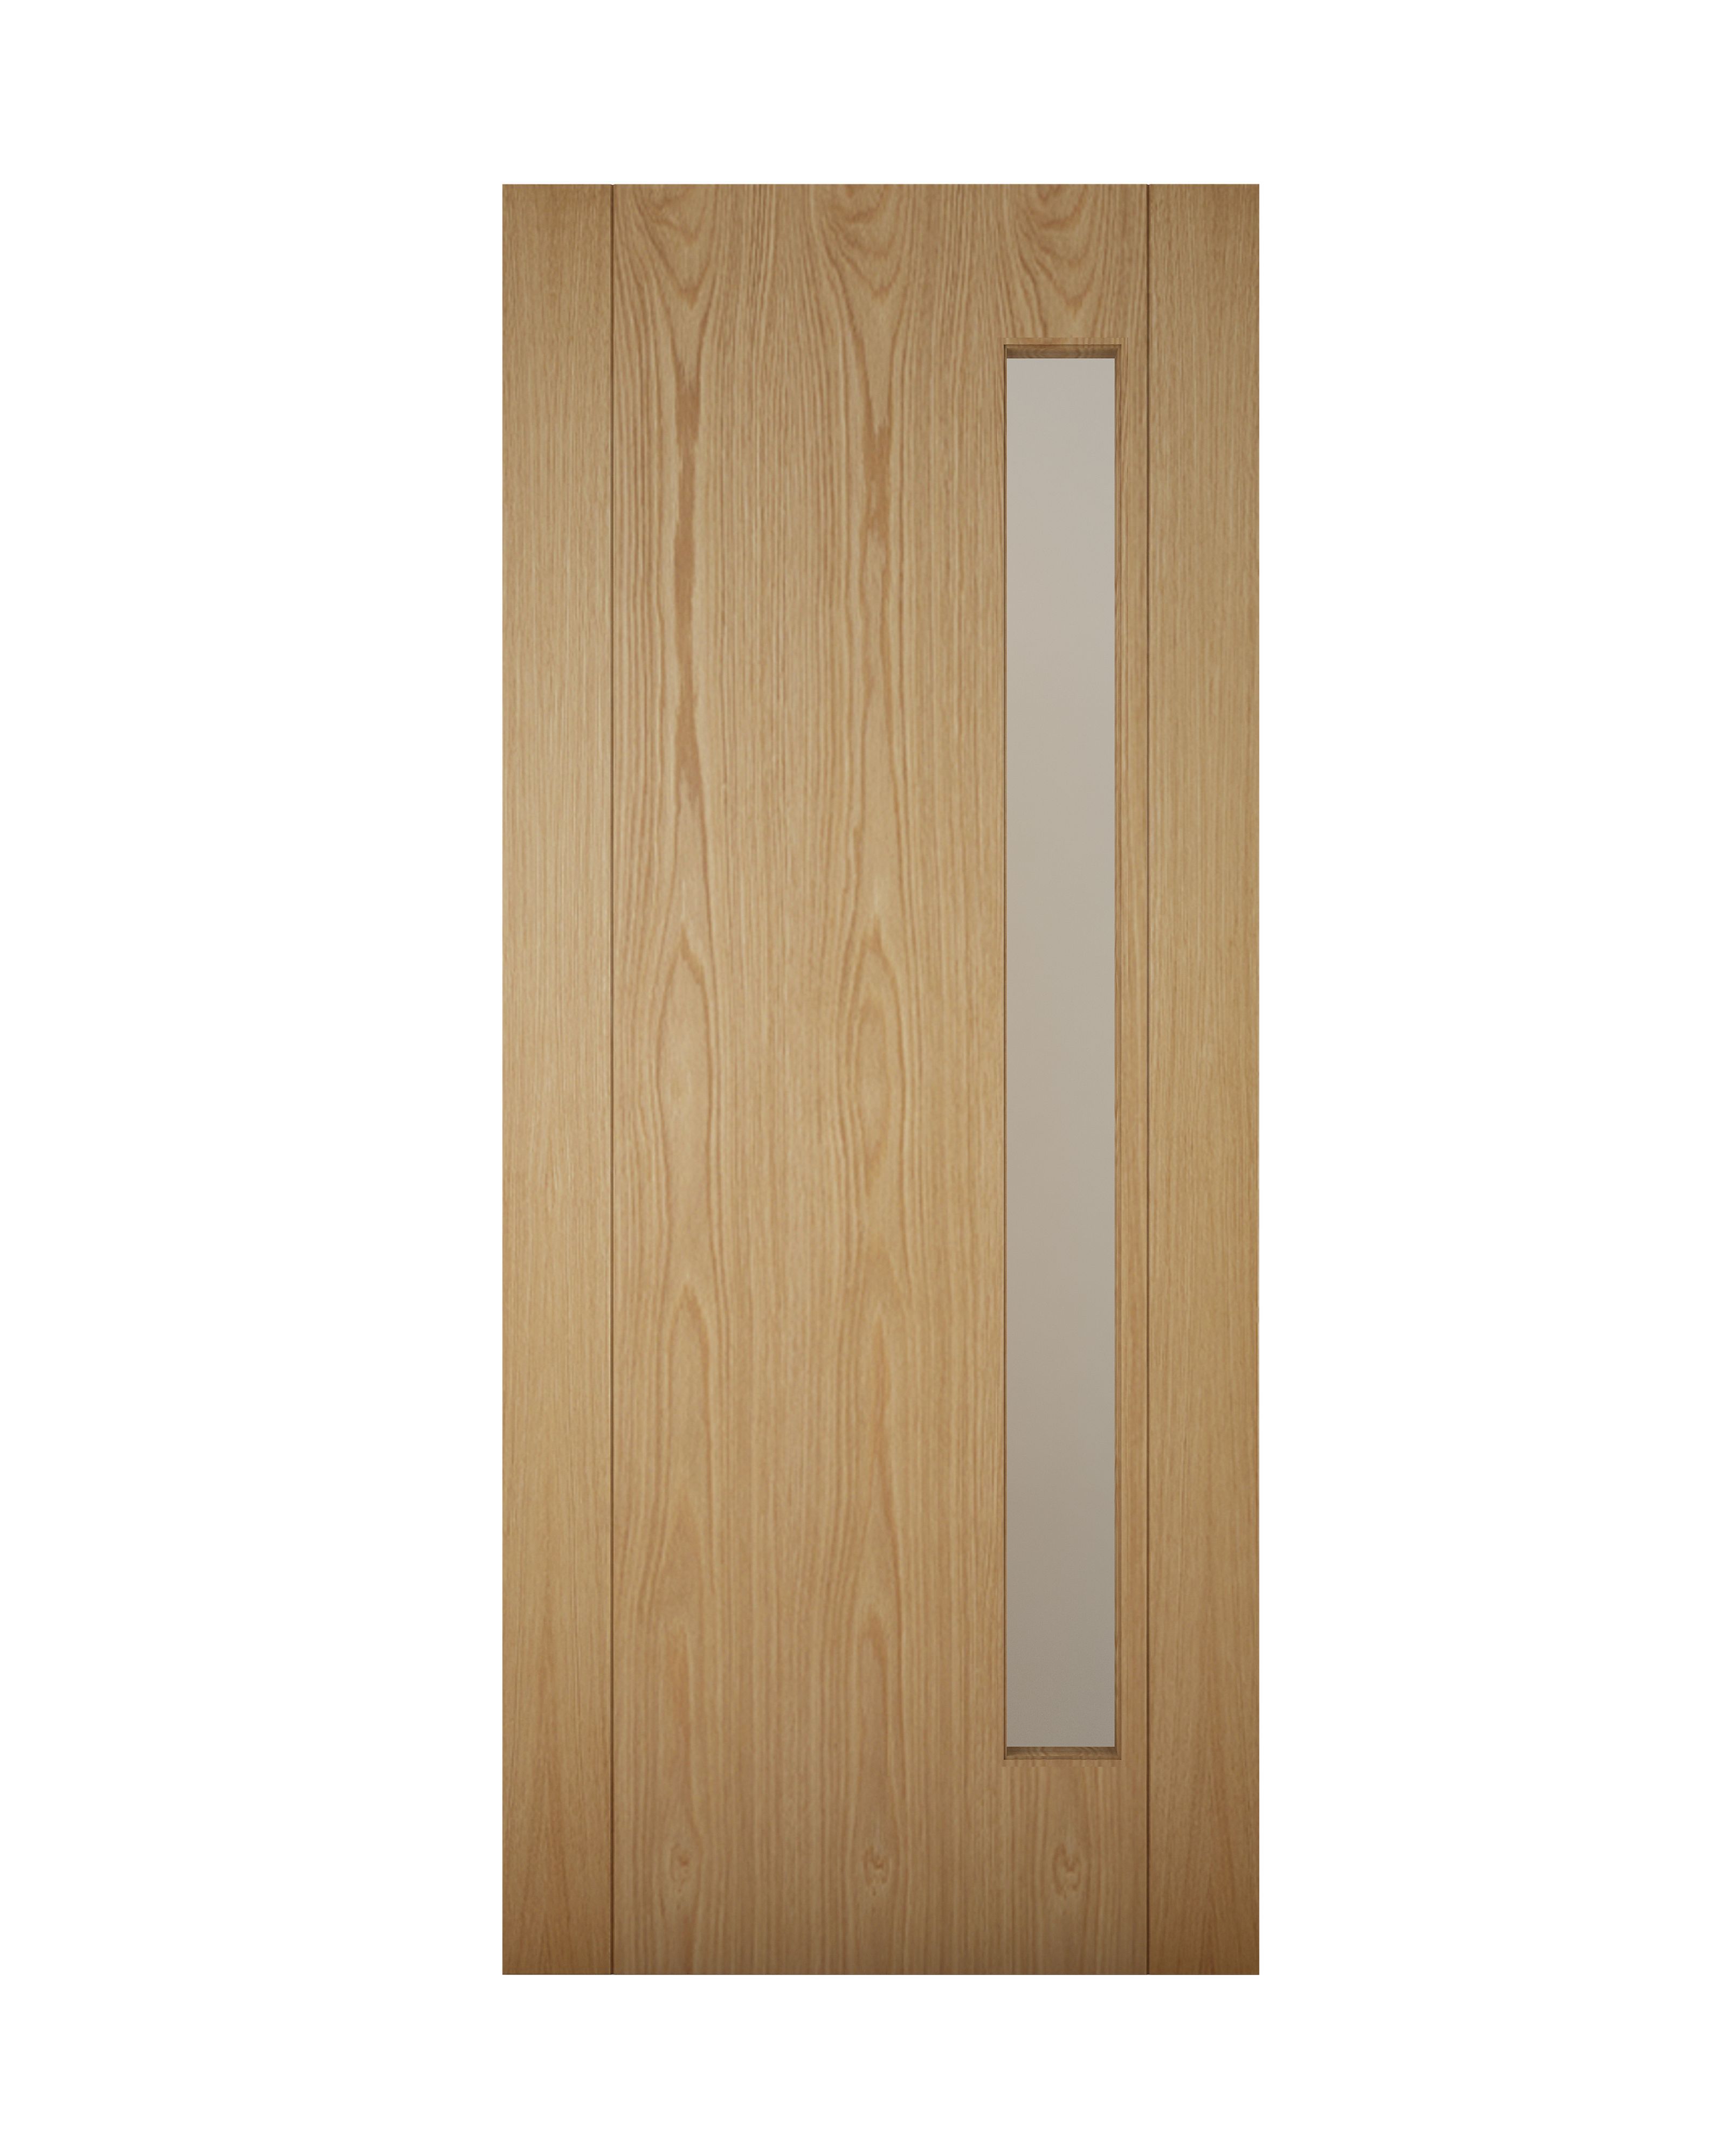 Glazed White oak veneer Left & RHed Front Door set & letter plate, (H)2074mm (W)932mm